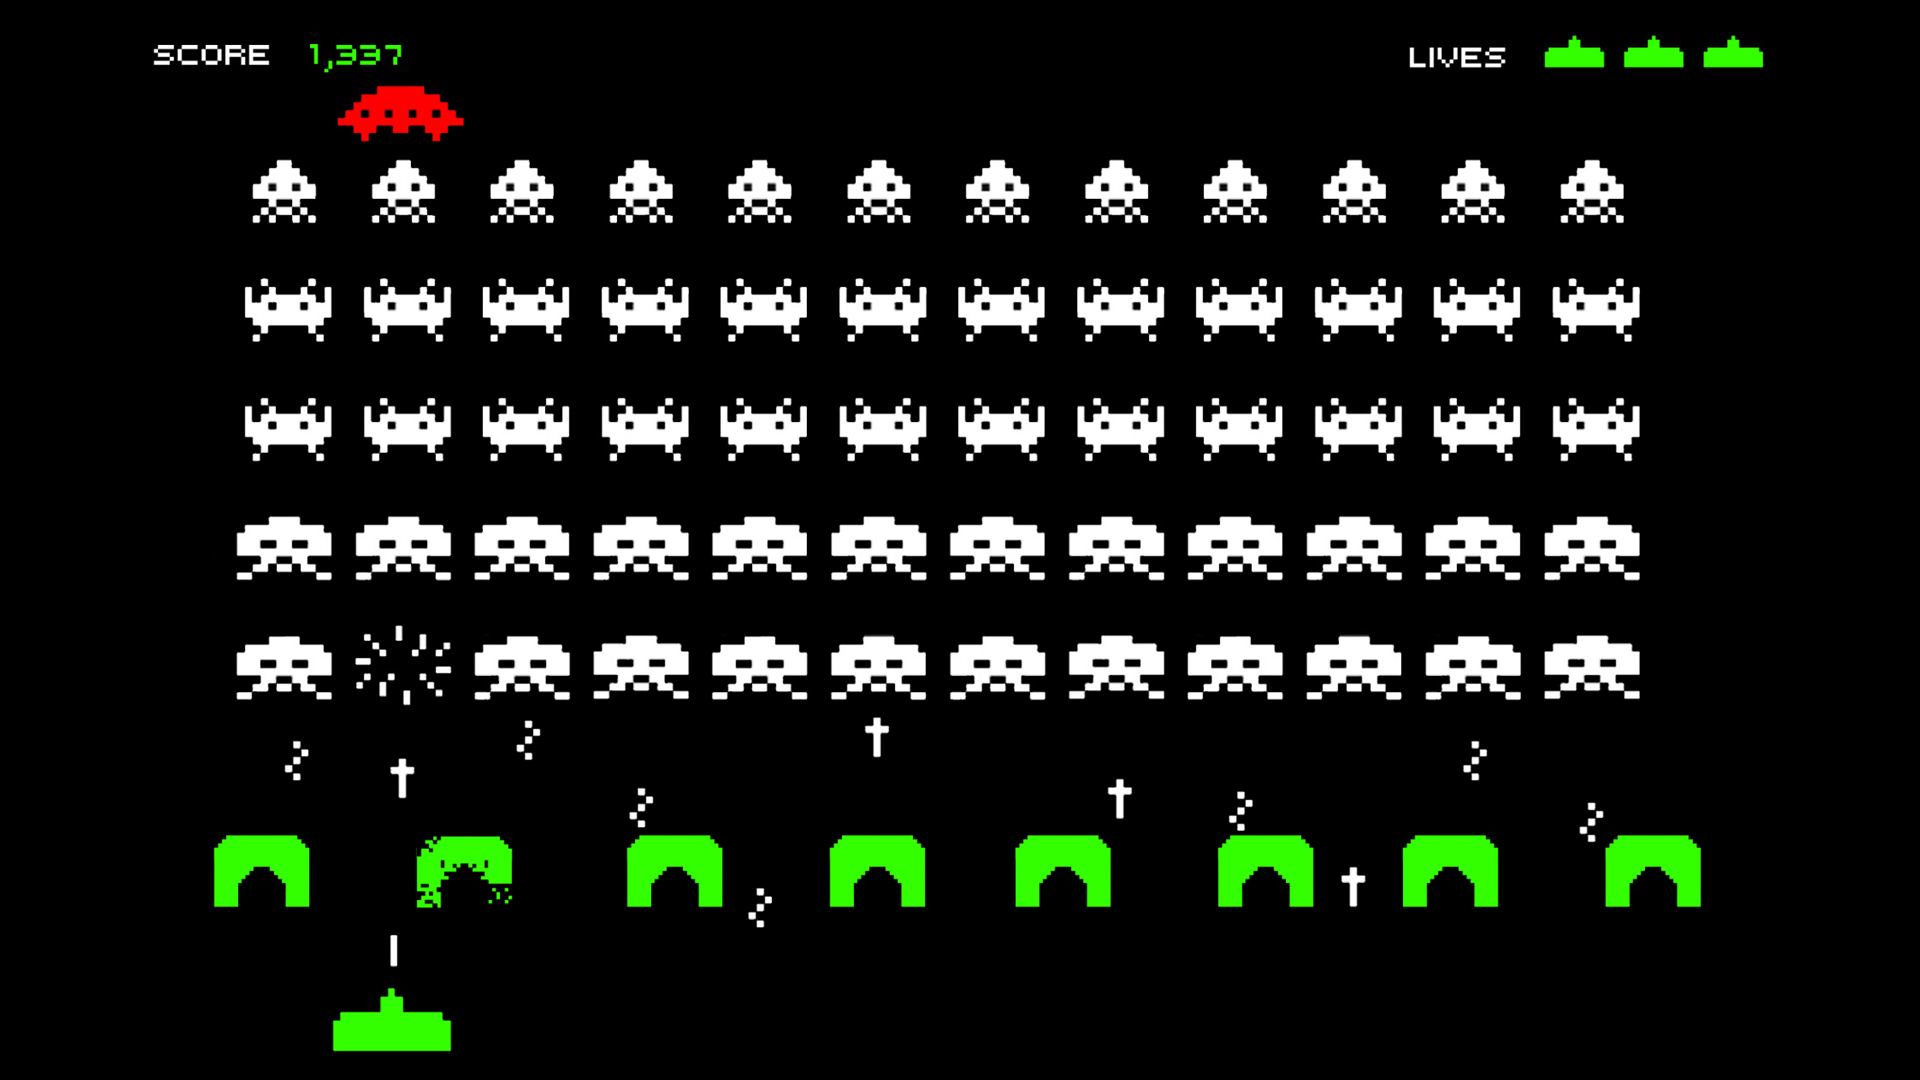 Captura de pantalla del video juego space invaders donde se aprecian naves enemigas, la nave amiga, marcadores de vidas y puntuación, proyectiles amigos y enemigos y las defensas de la nave.